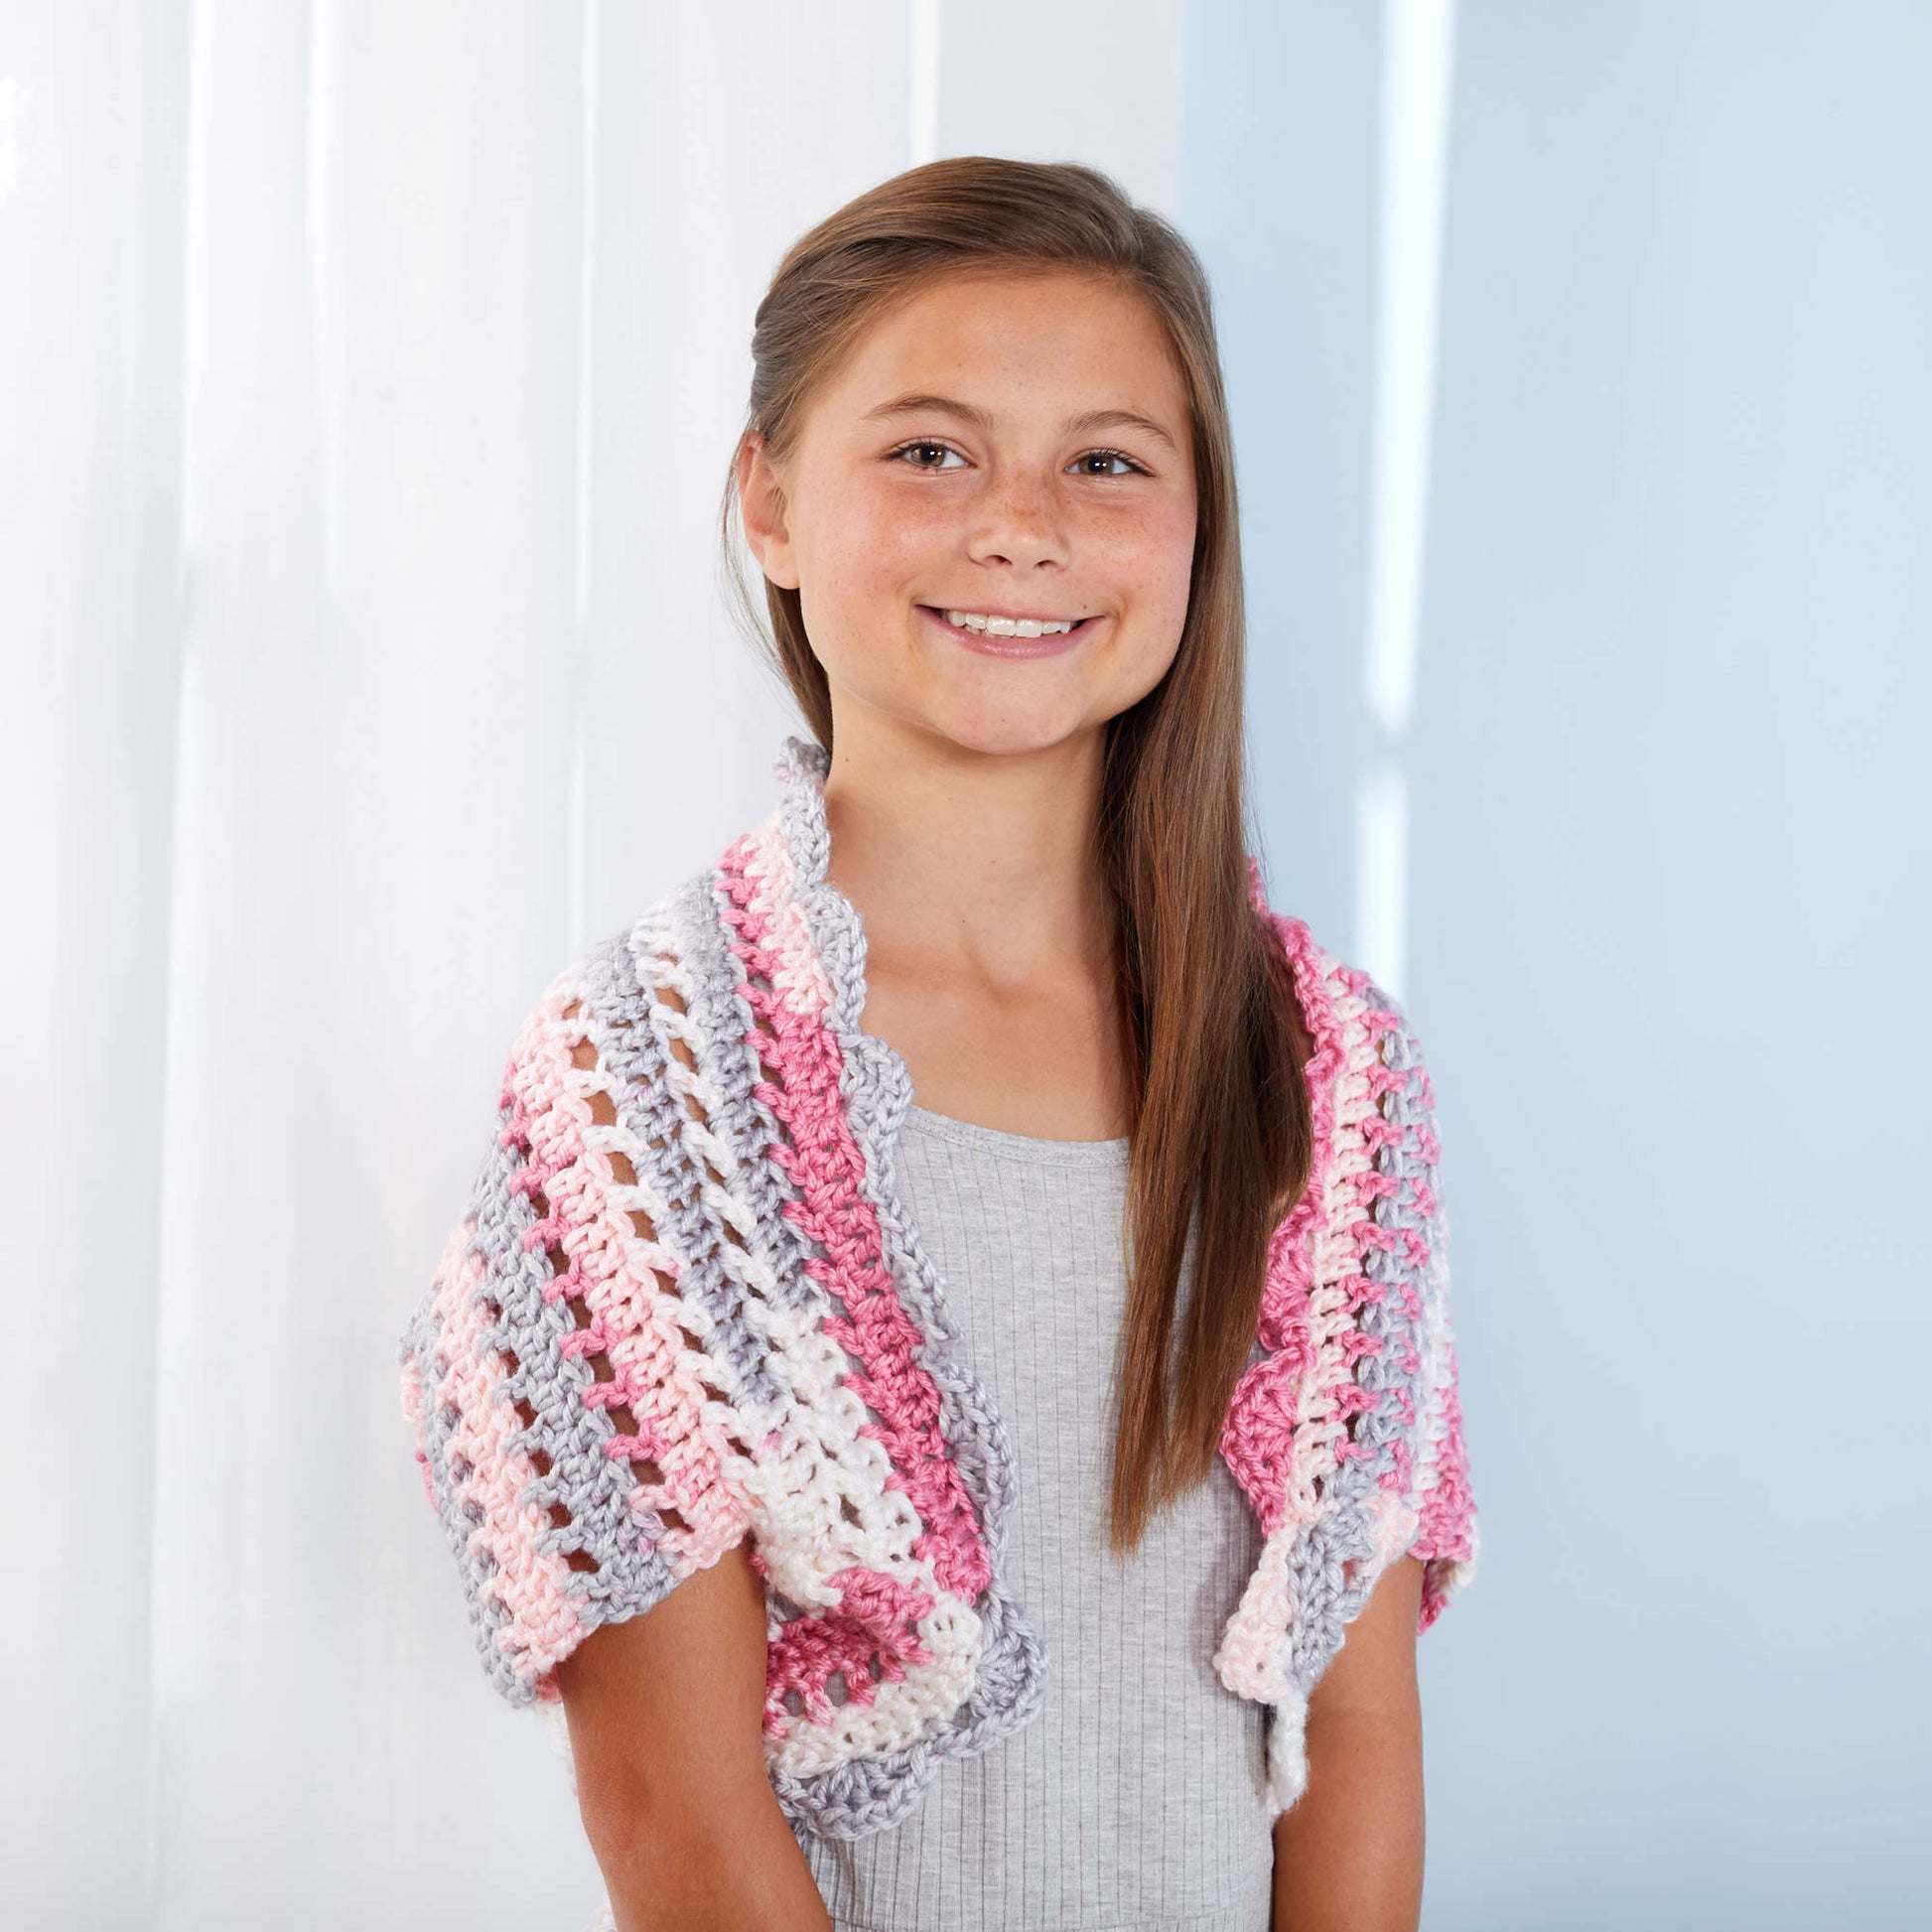 Free Red Heart Adorable Girl's Shrug Crochet Pattern